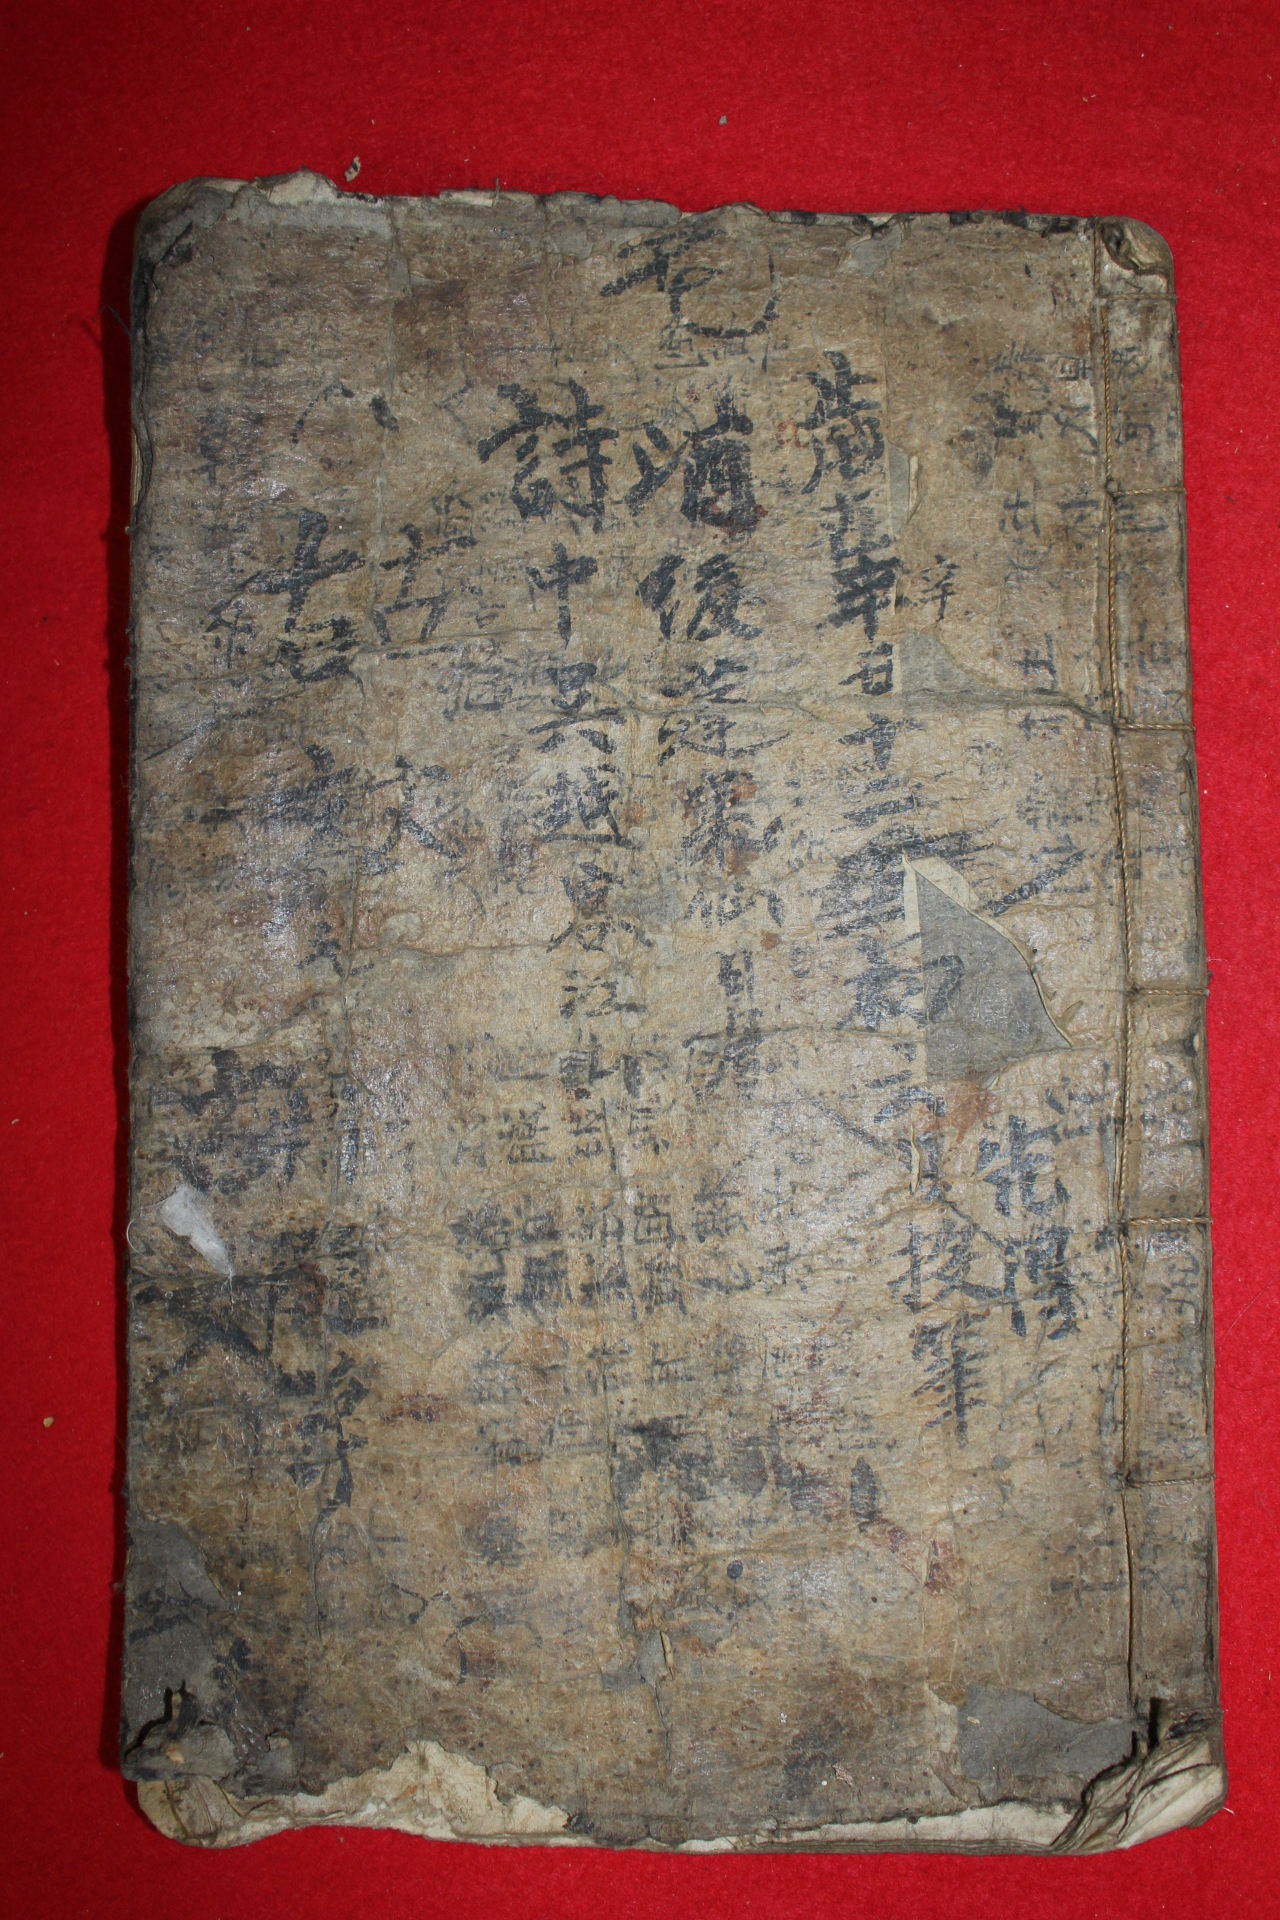 조선시대 필사본 고문 1책